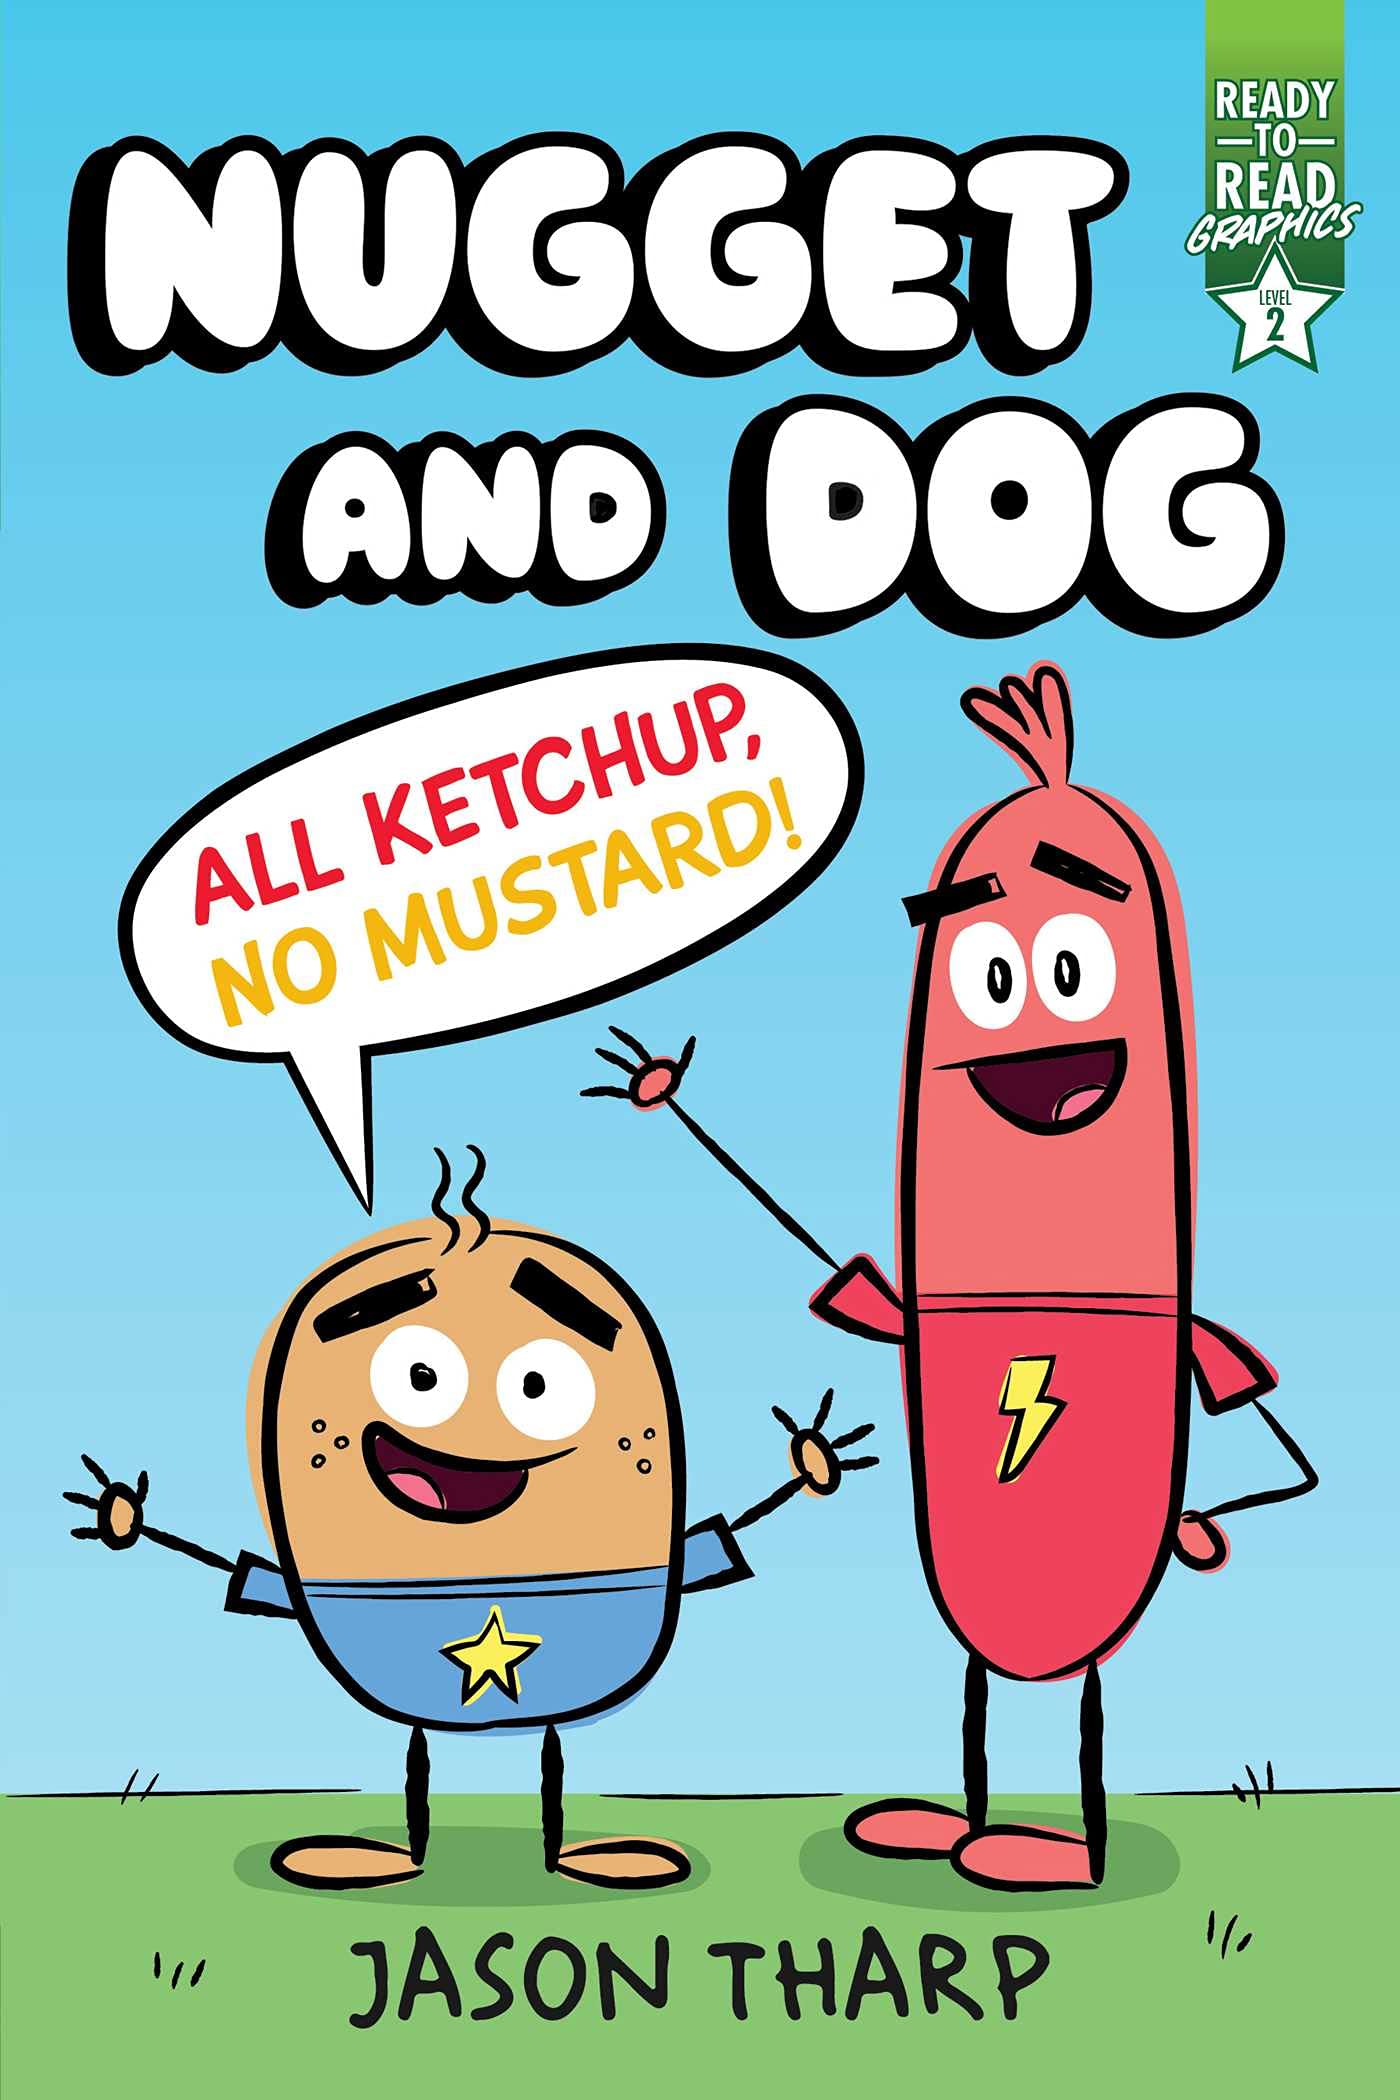 All Ketchup, No Mustard!